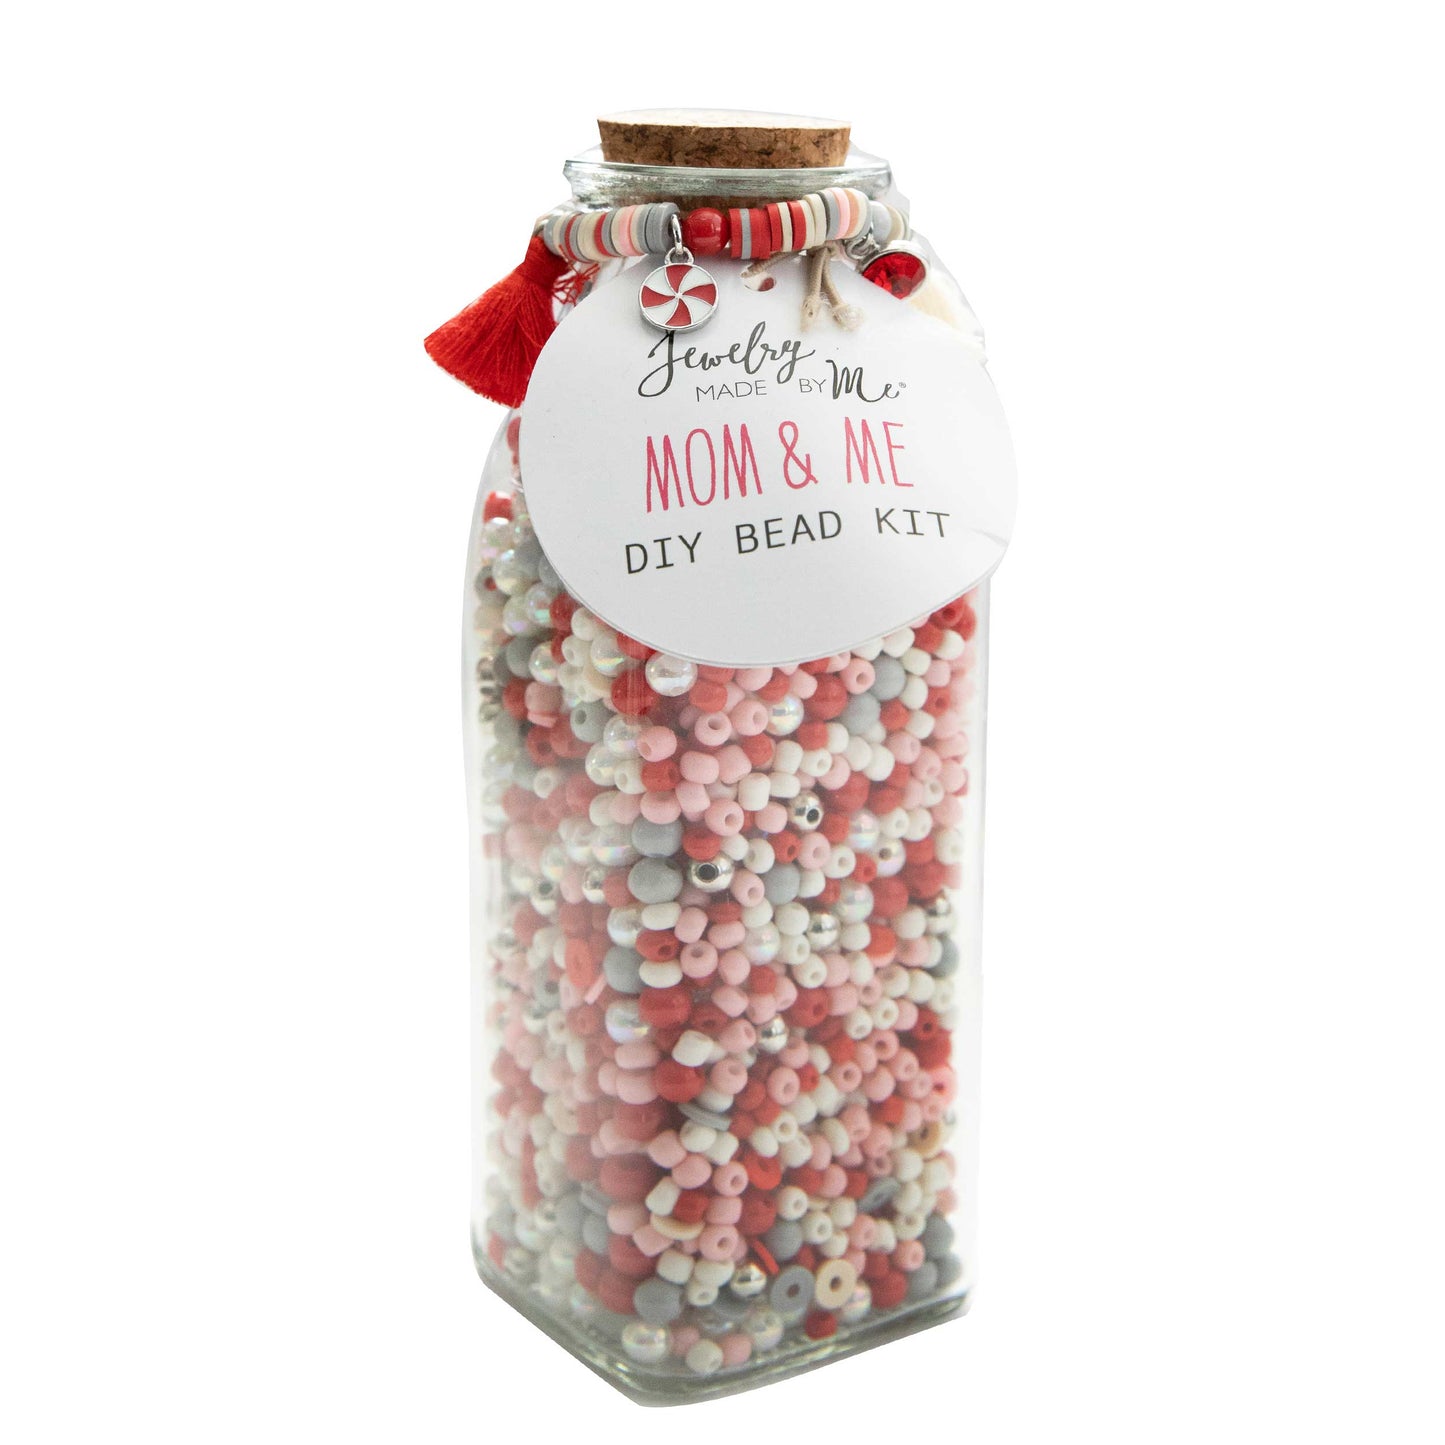 Mom & Me Milk Bottle DIY Bead Kit